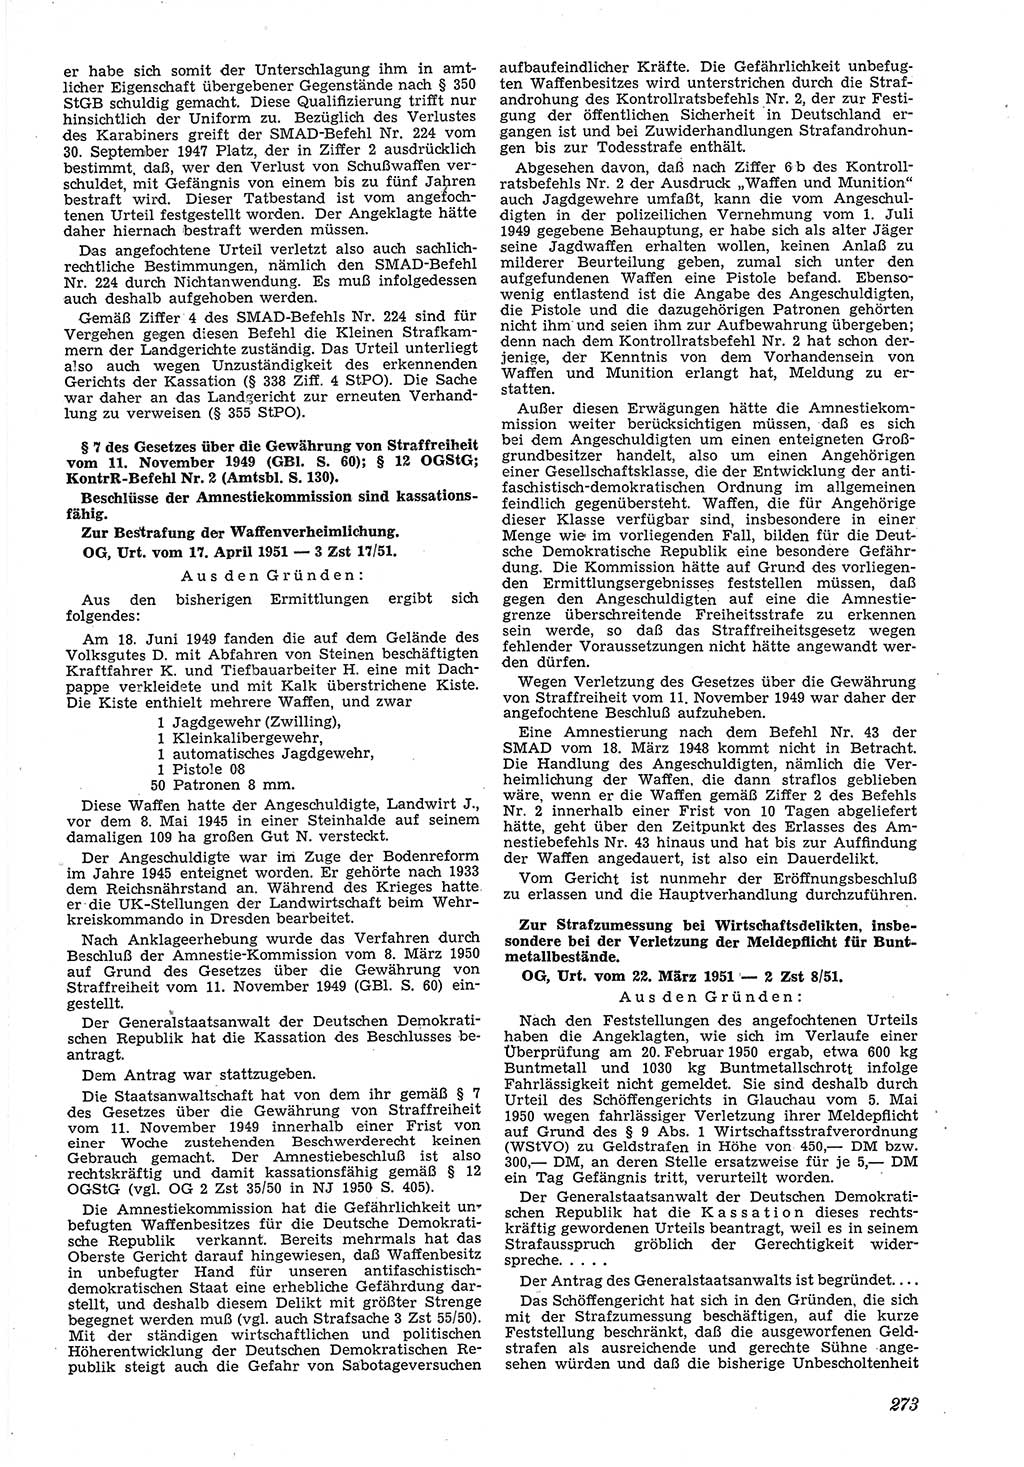 Neue Justiz (NJ), Zeitschrift für Recht und Rechtswissenschaft [Deutsche Demokratische Republik (DDR)], 5. Jahrgang 1951, Seite 273 (NJ DDR 1951, S. 273)